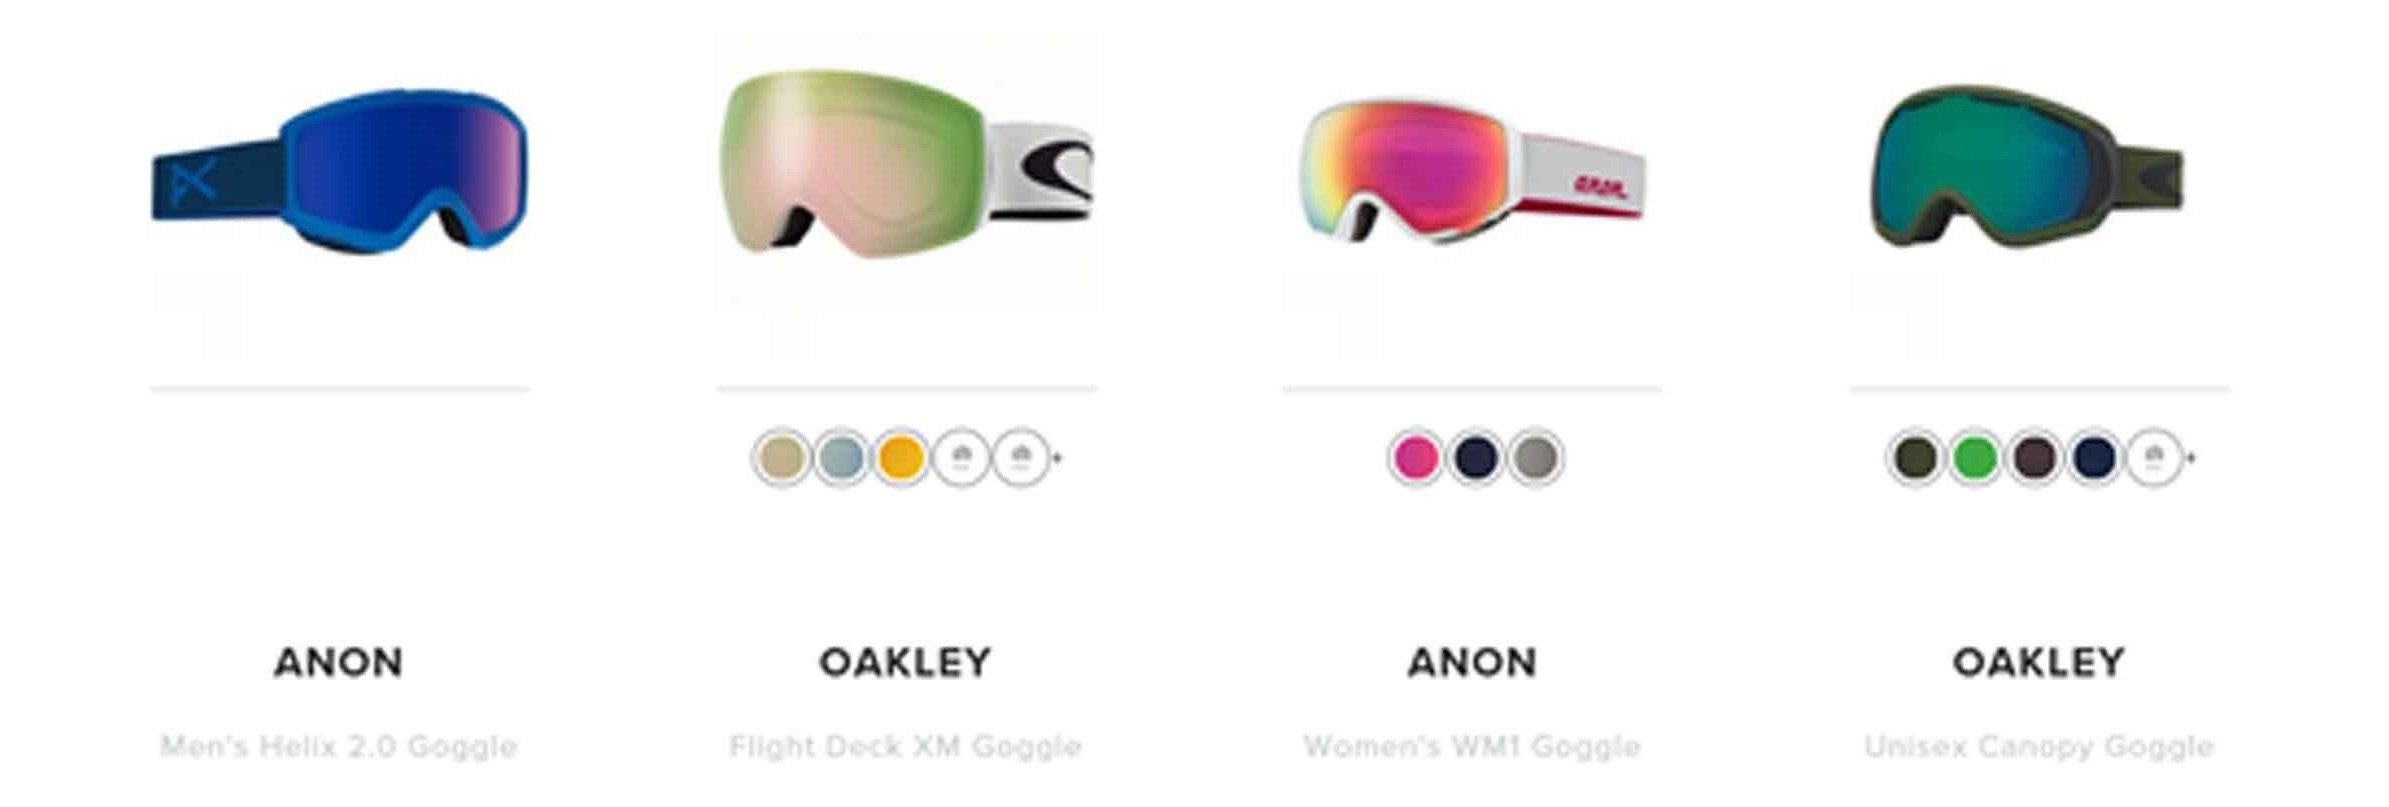 Ski Goggles Research Image 1